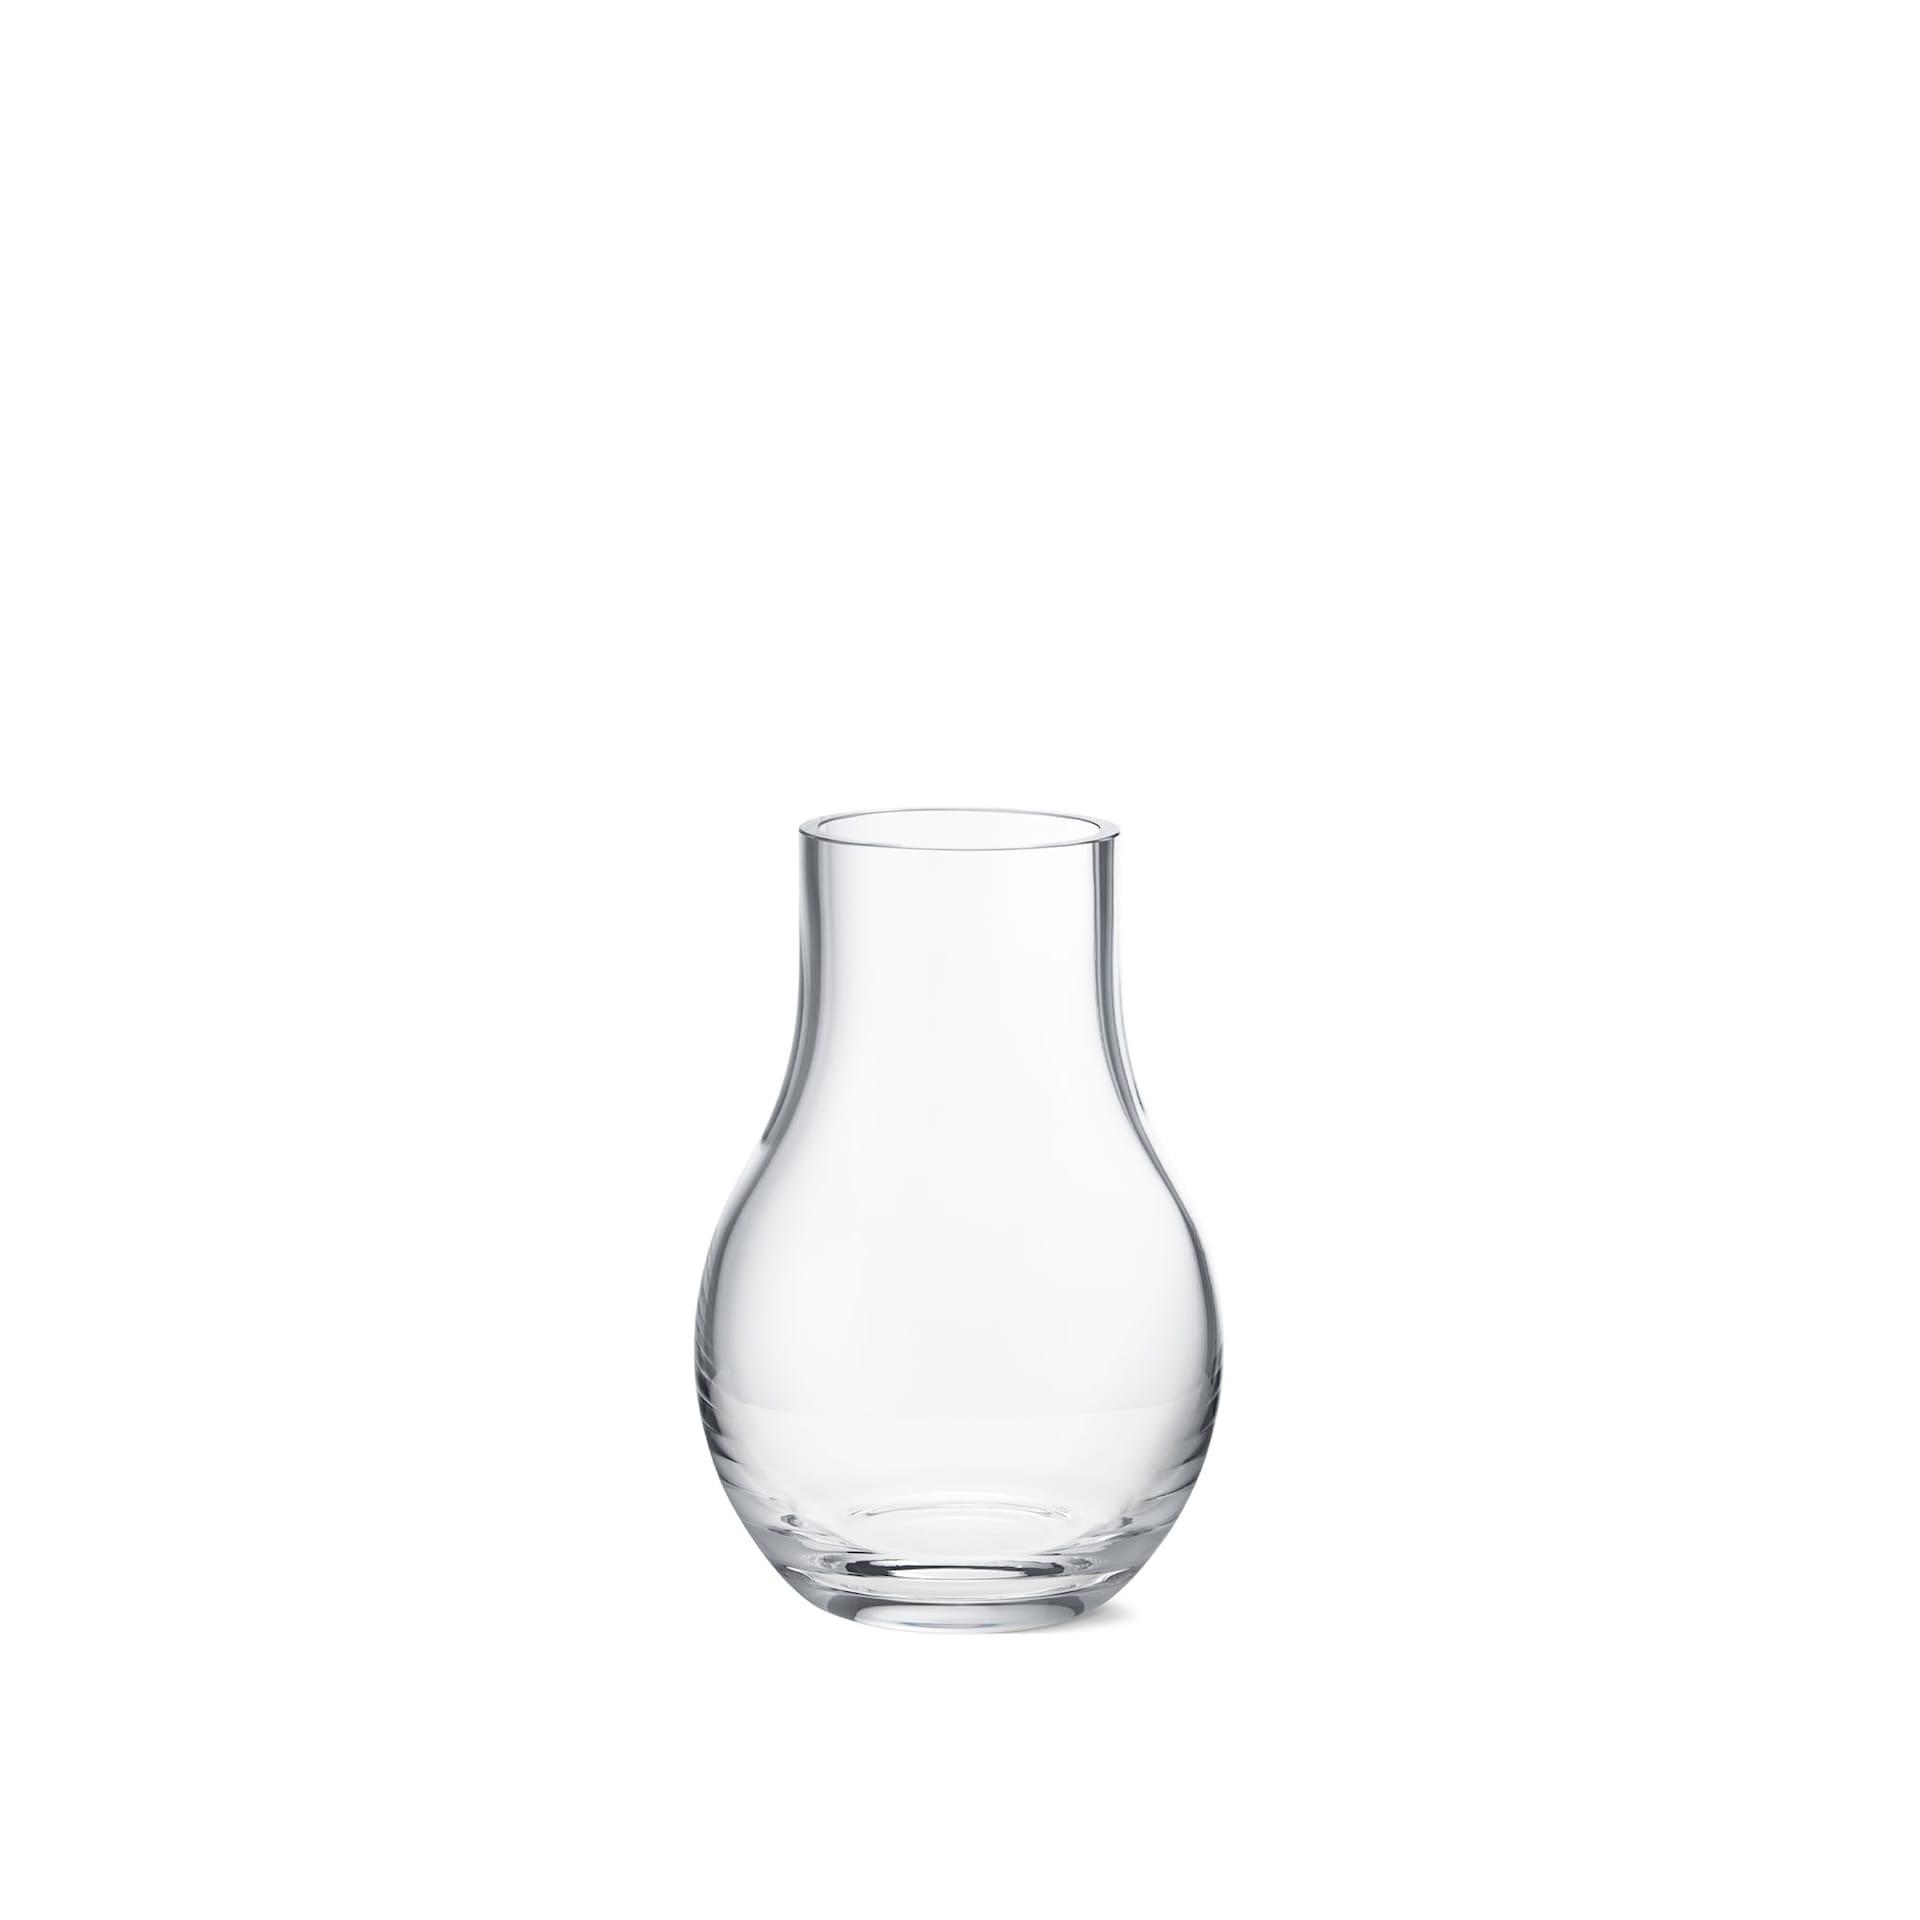 COMING Cafu Vase Glass Clear Small - Georg Jensen - NO GA